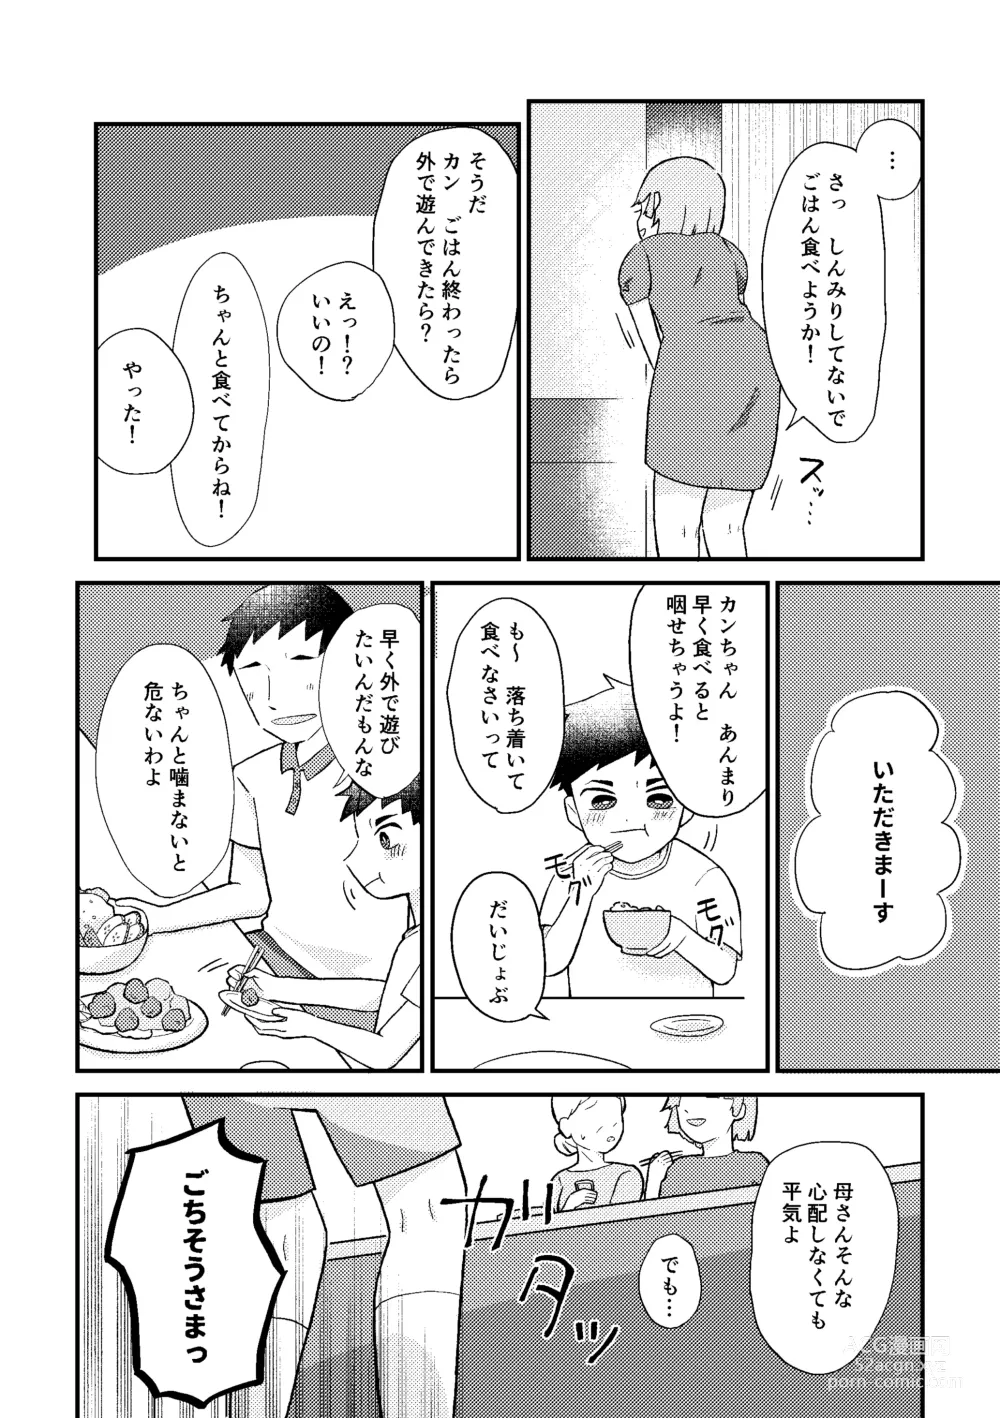 Page 5 of doujinshi Saigo no Natsuyasumi